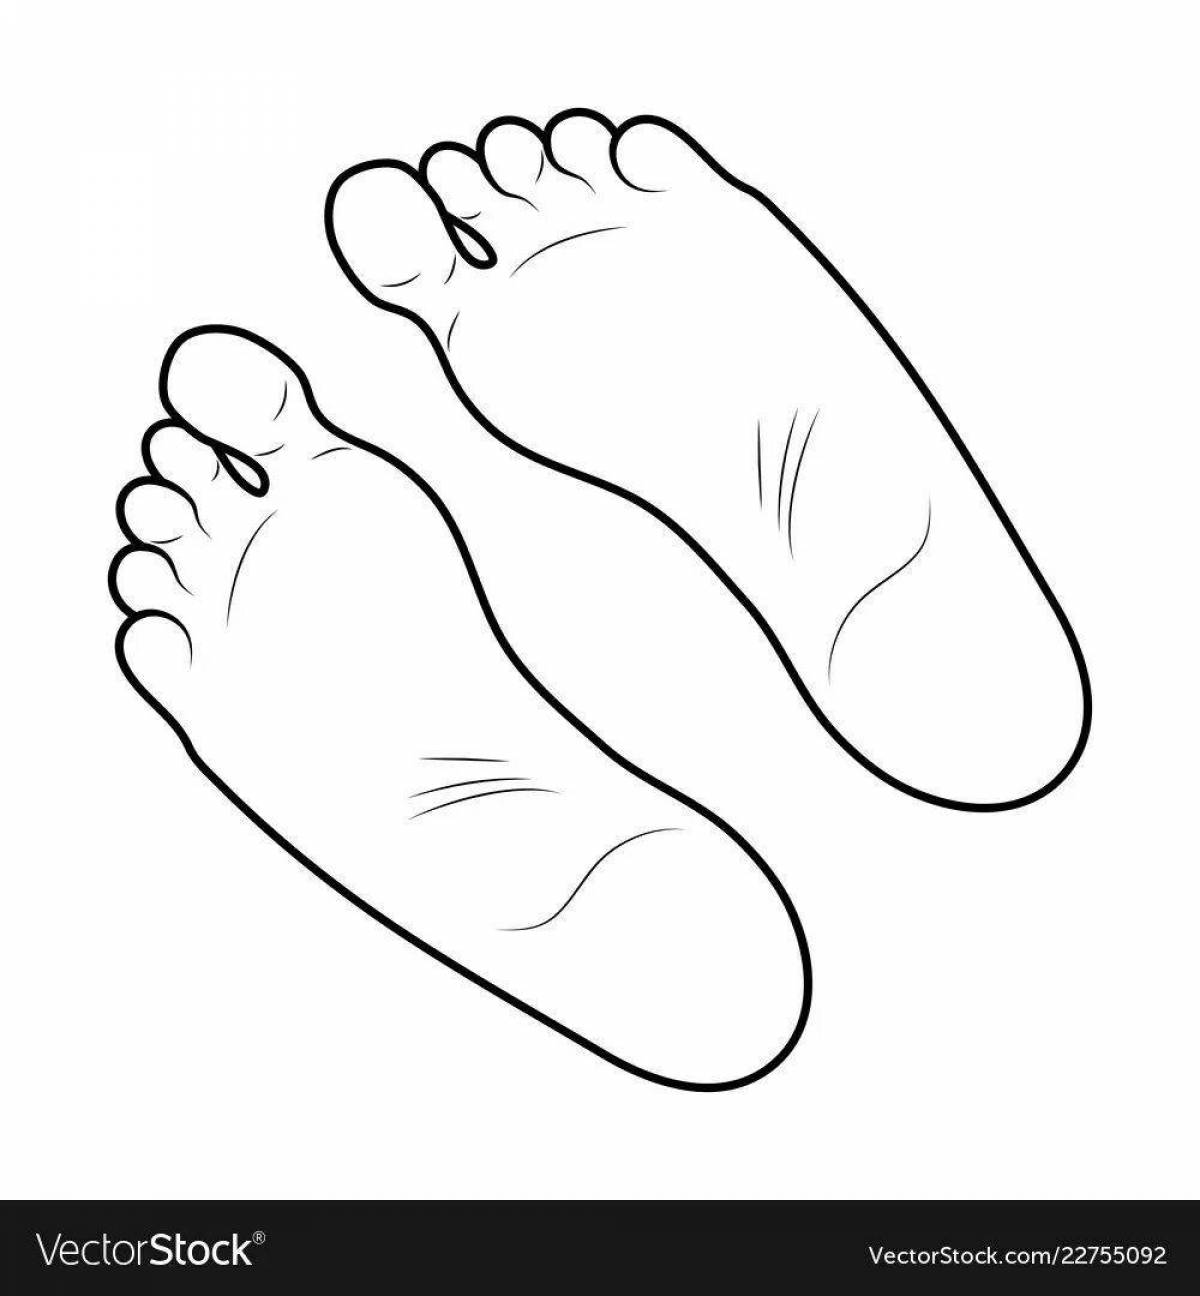 Footprints for kids #2